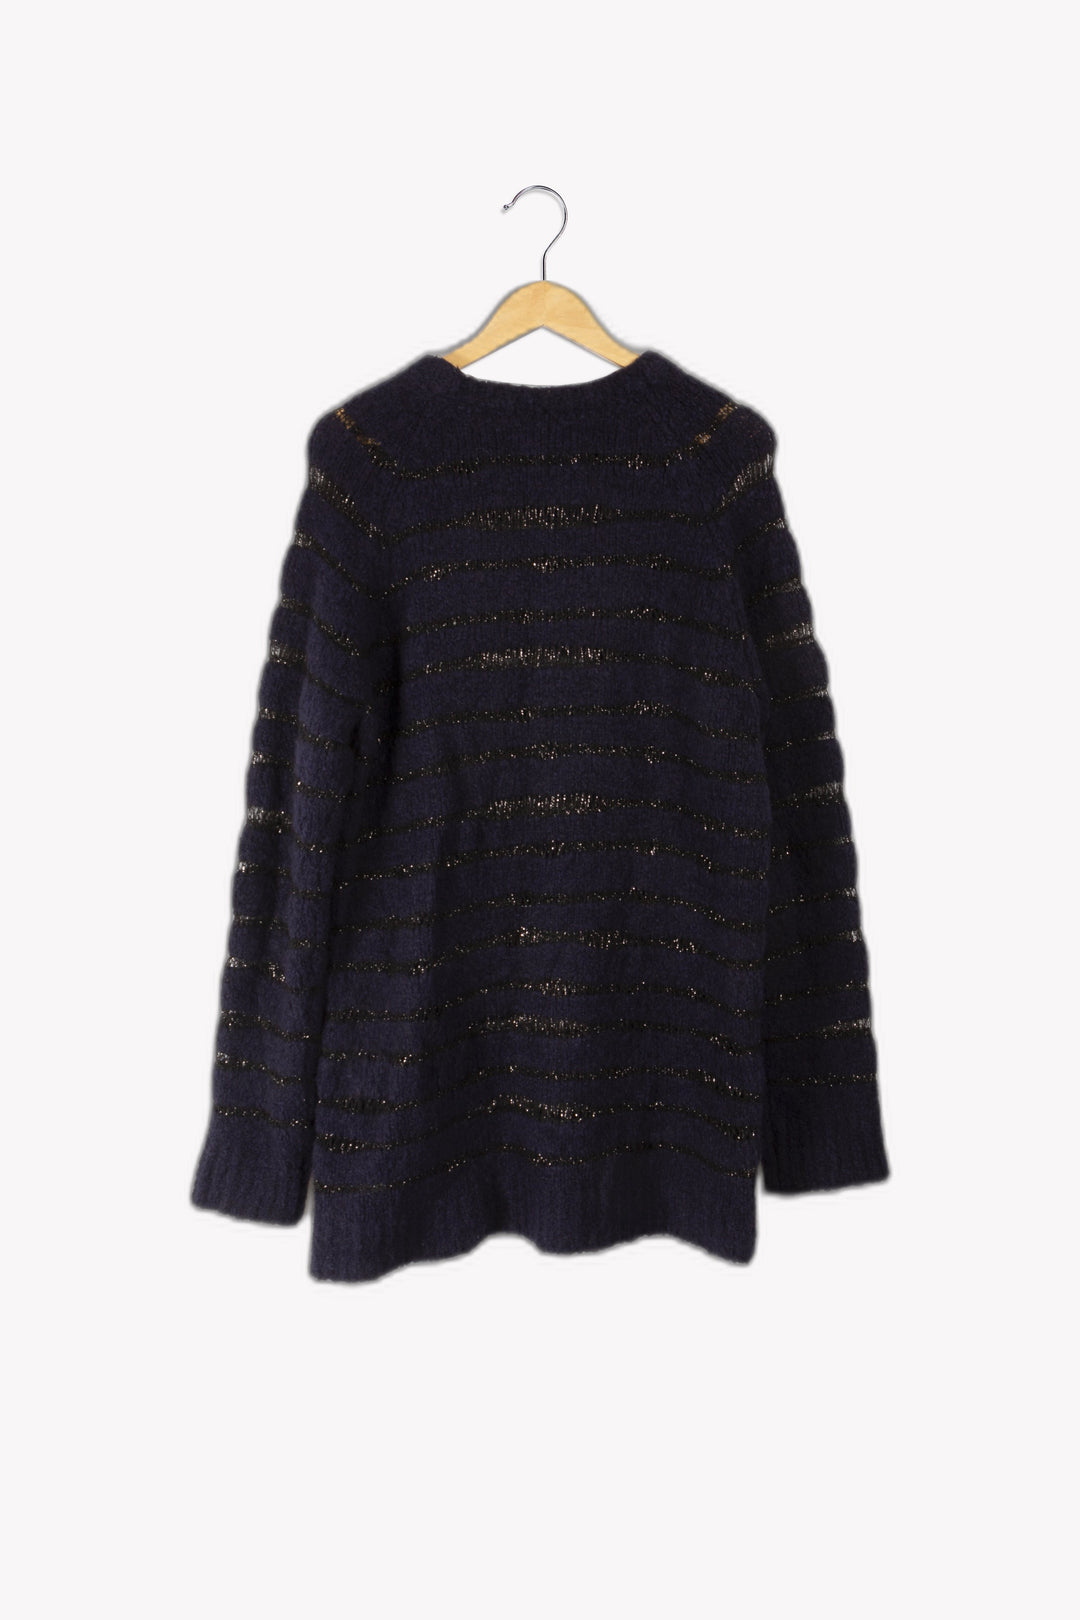 Sweater dress - L/40